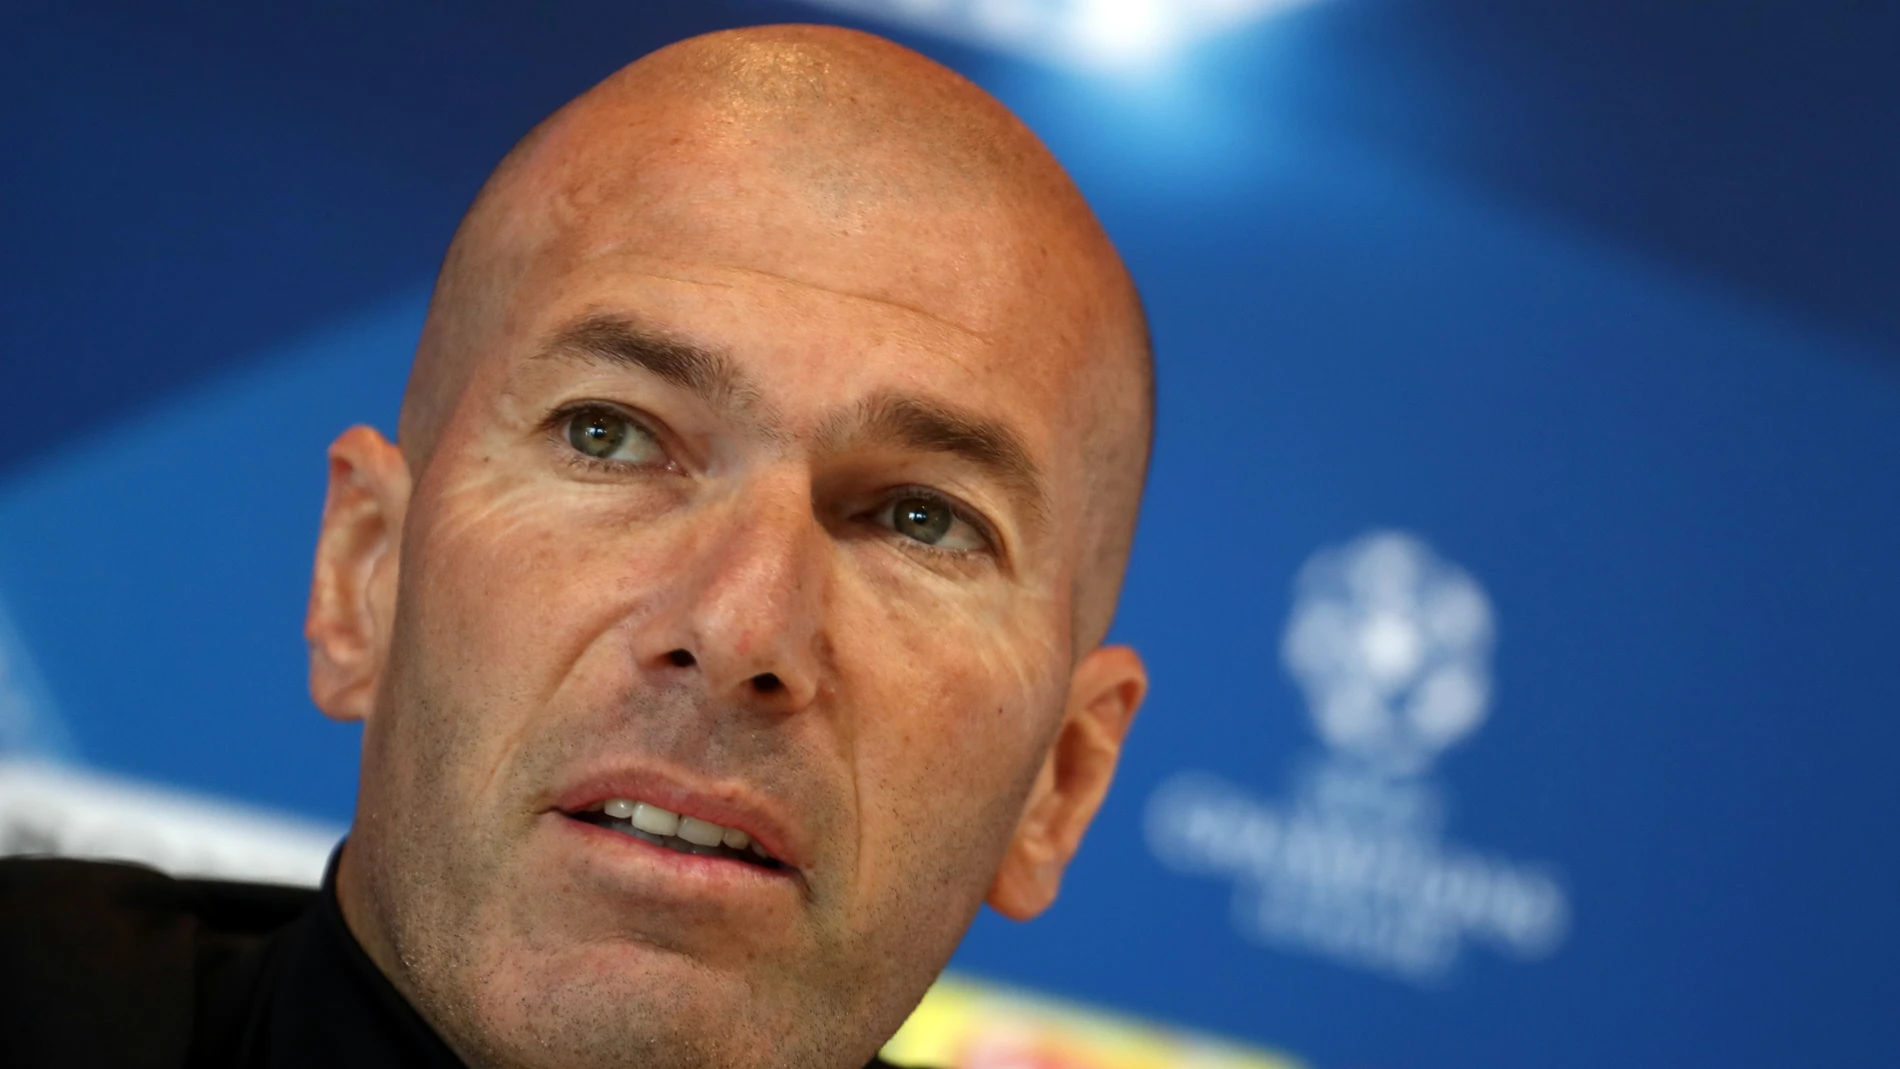 Zinedine Zidane, en la rueda de prensa durante el Media Day